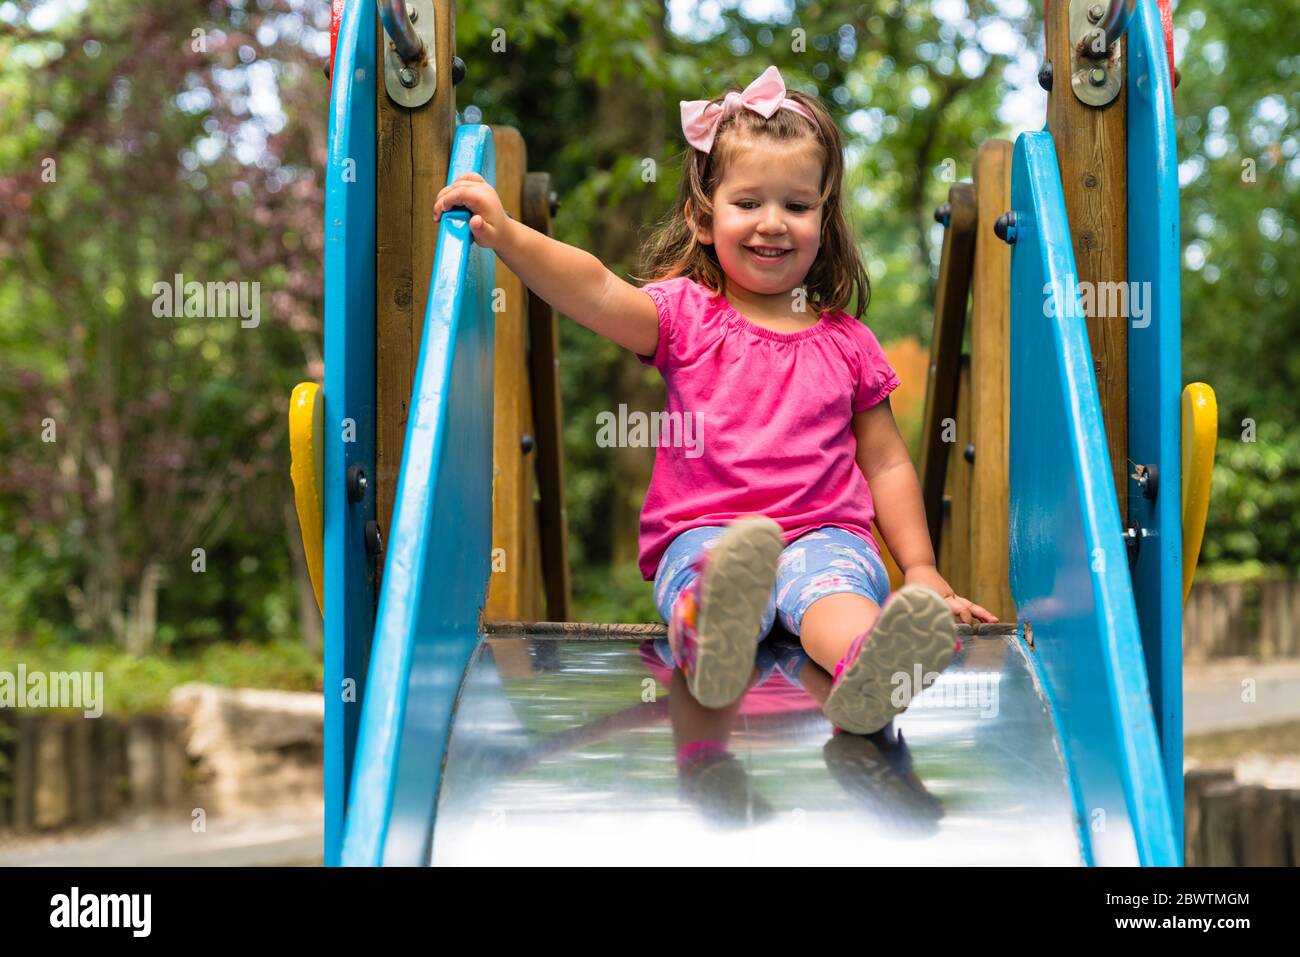 Portrait von lächelnd kleinen Mädchen auf Spielplatz Rutsche Stockfoto